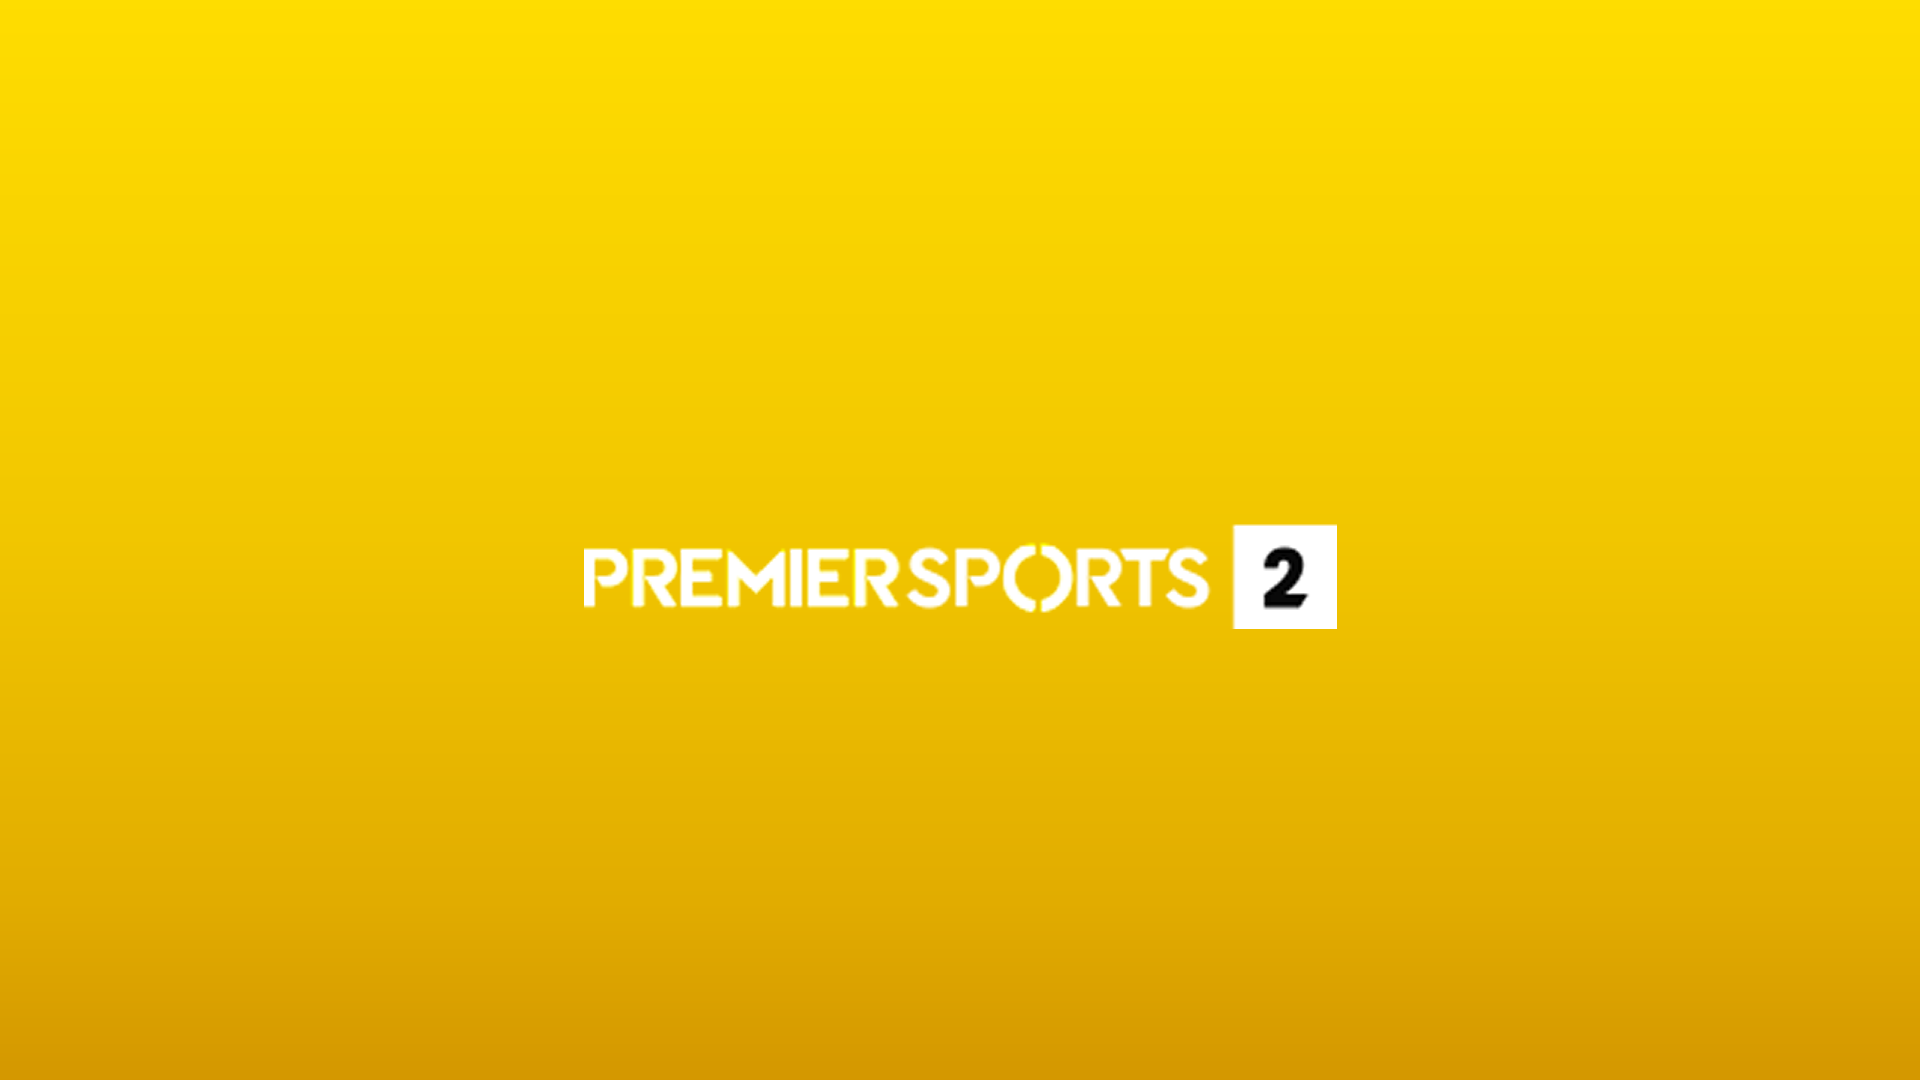 Premier Sports 2 UK Live Online